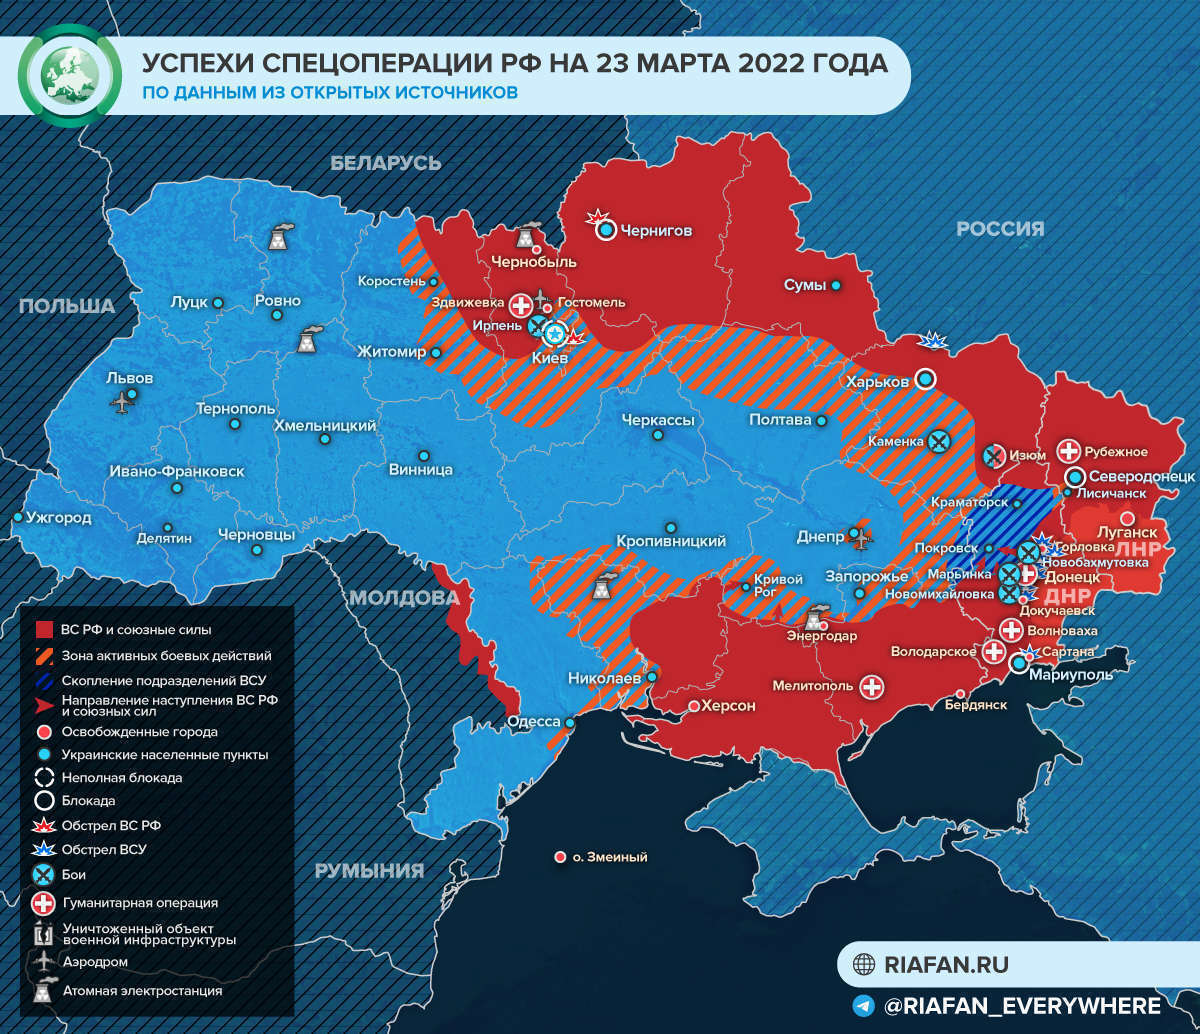 Обновленная карта боевых действий на Украине по данным на 24 марта 2022 года. День 29-й спецоперации России на Украине - обзор событий, новости, карты